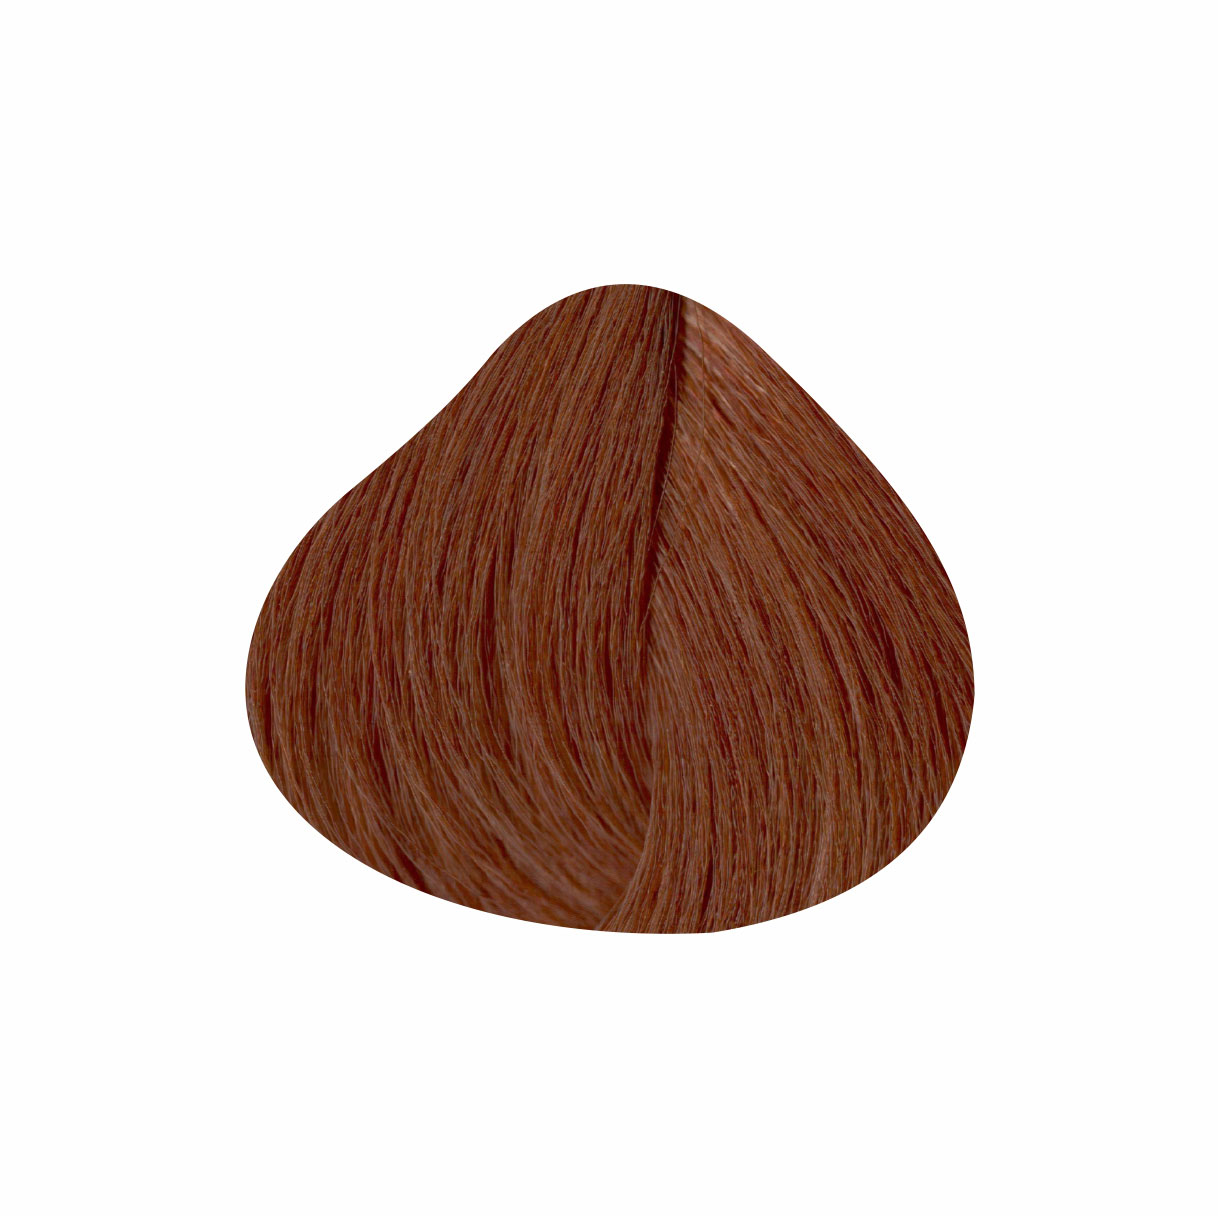 8MRB (металлик рубиновый коричневый) Краска для волос-серии Metallics, 60мл